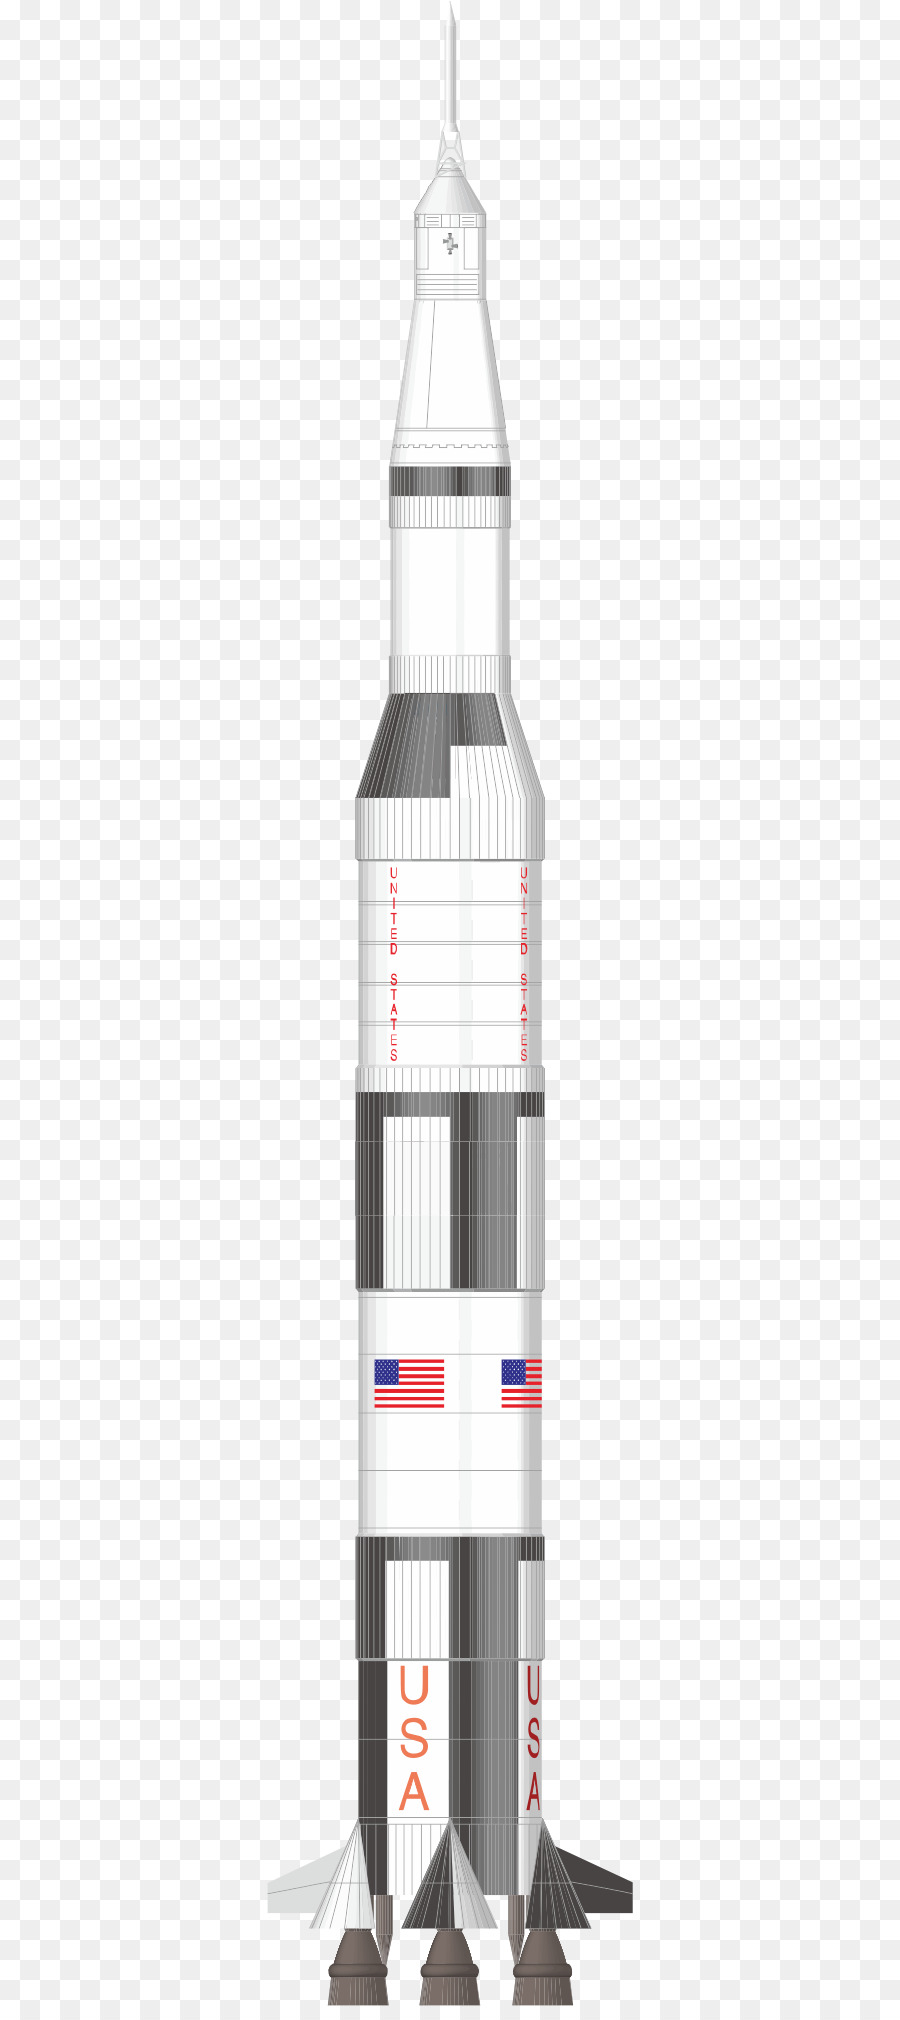 Apollo Programm, Space Shuttle-Programm die Saturn V, Shuttle-Abgeleitete Trägerrakete - Eine aufgerichtete Schiff